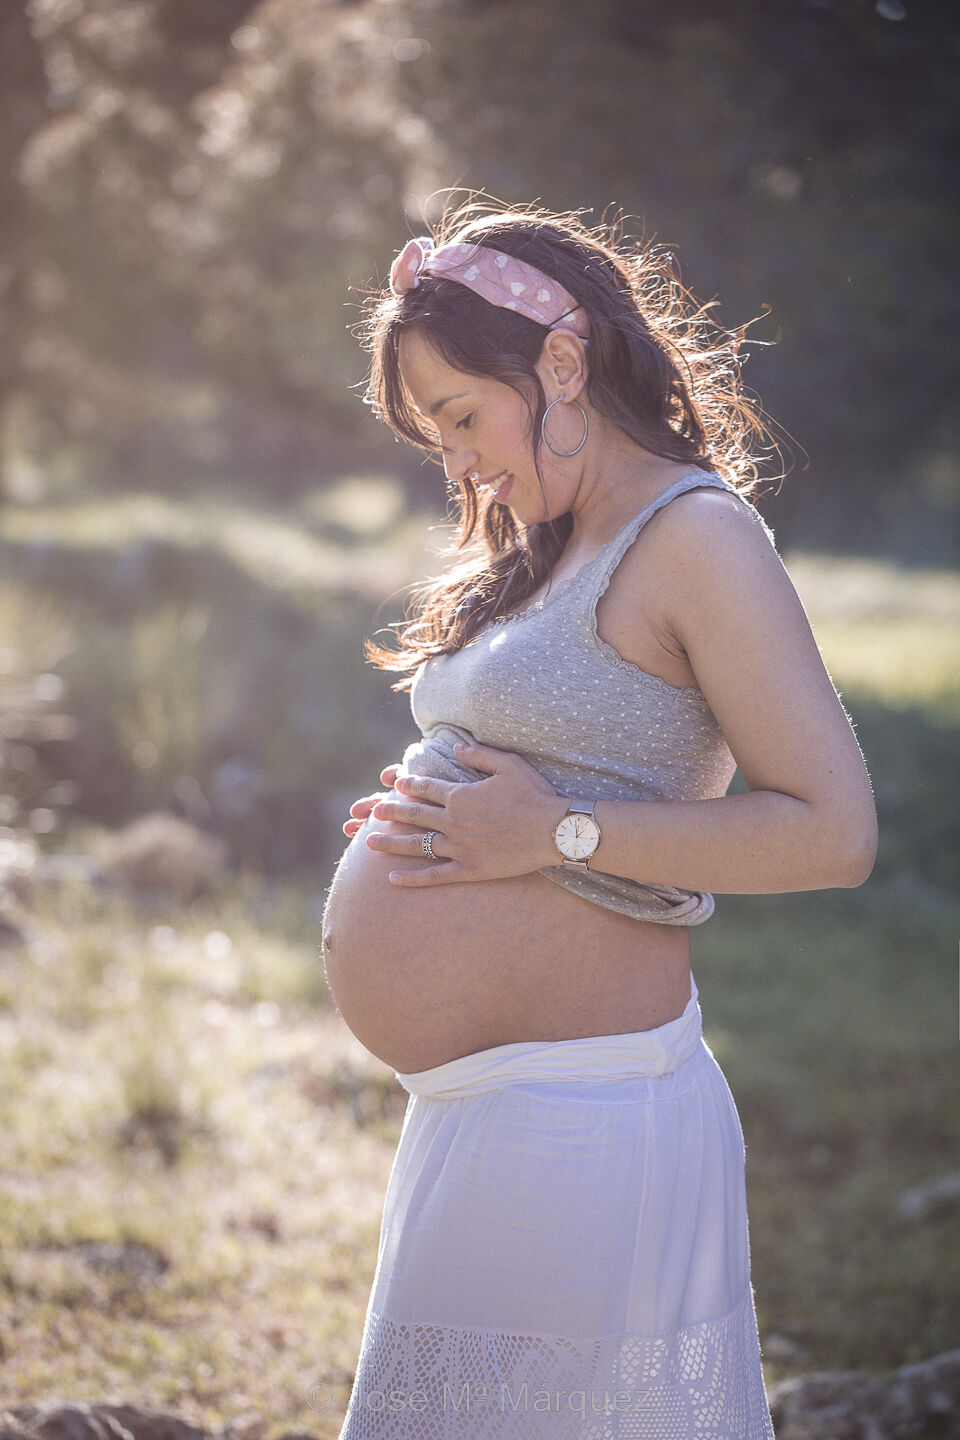 Plano medio de perfil de una chica embarazada en el campo. La chica se mira y acaricia el vientre mientras la luz del atardecer acentúa la silueta embarazada